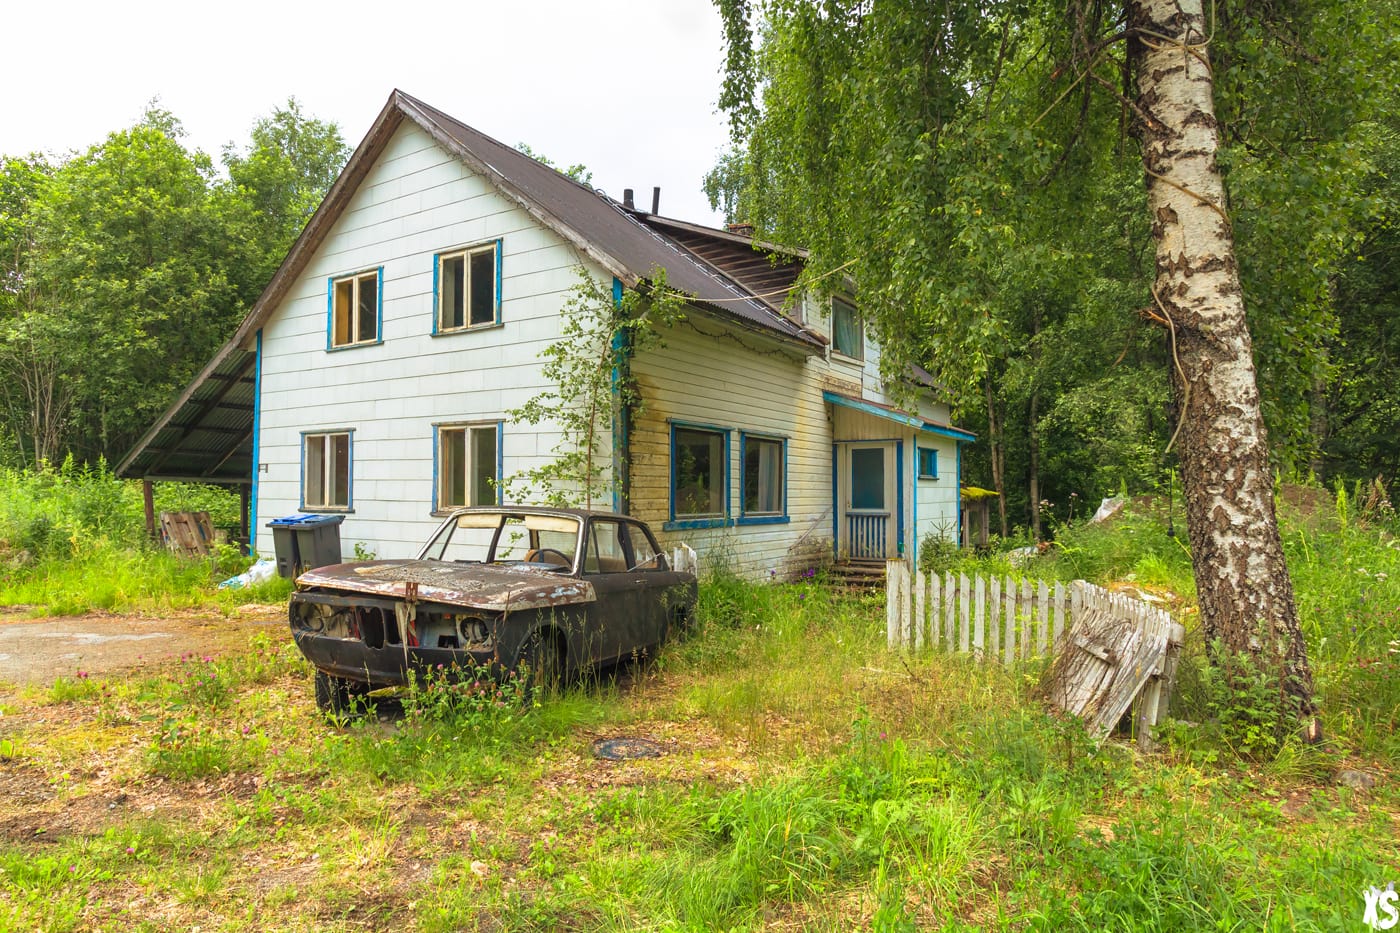 Maison abandonnée en Norvège - Urbex